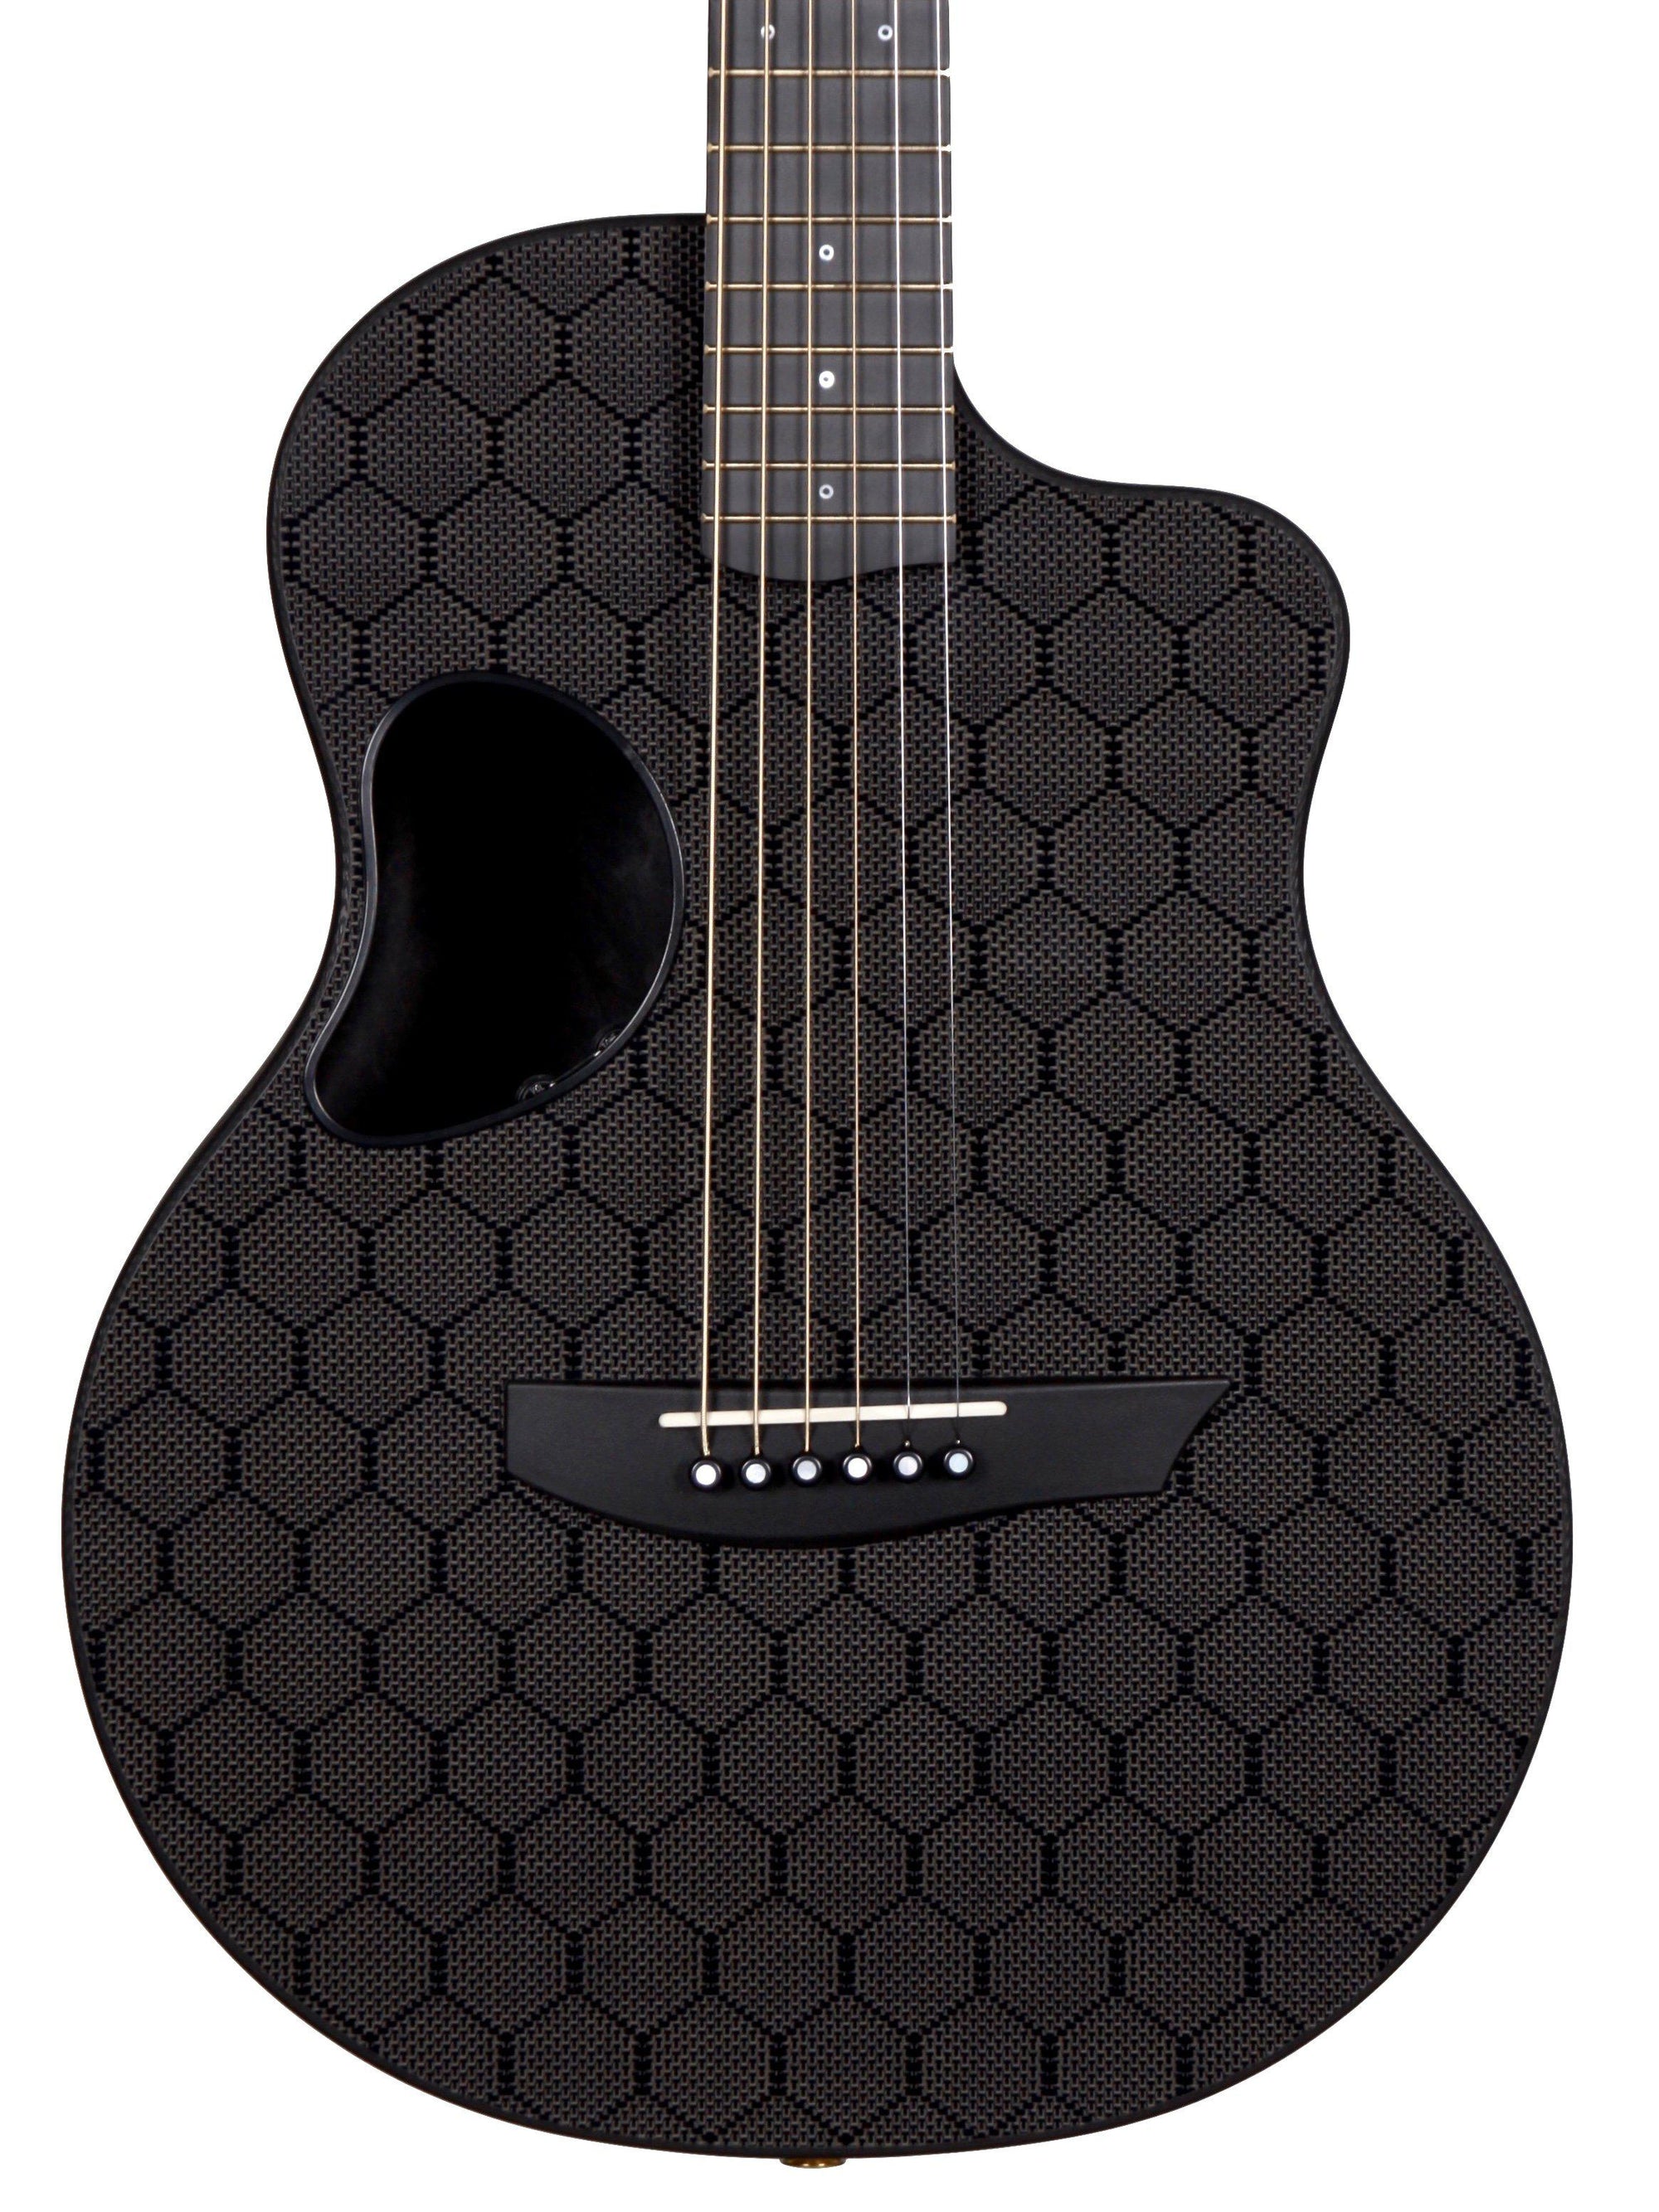 McPherson Carbon Fiber Touring Model Honeycomb Finish and Chrome Hardware #10168 - McPherson Guitars - Heartbreaker Guitars